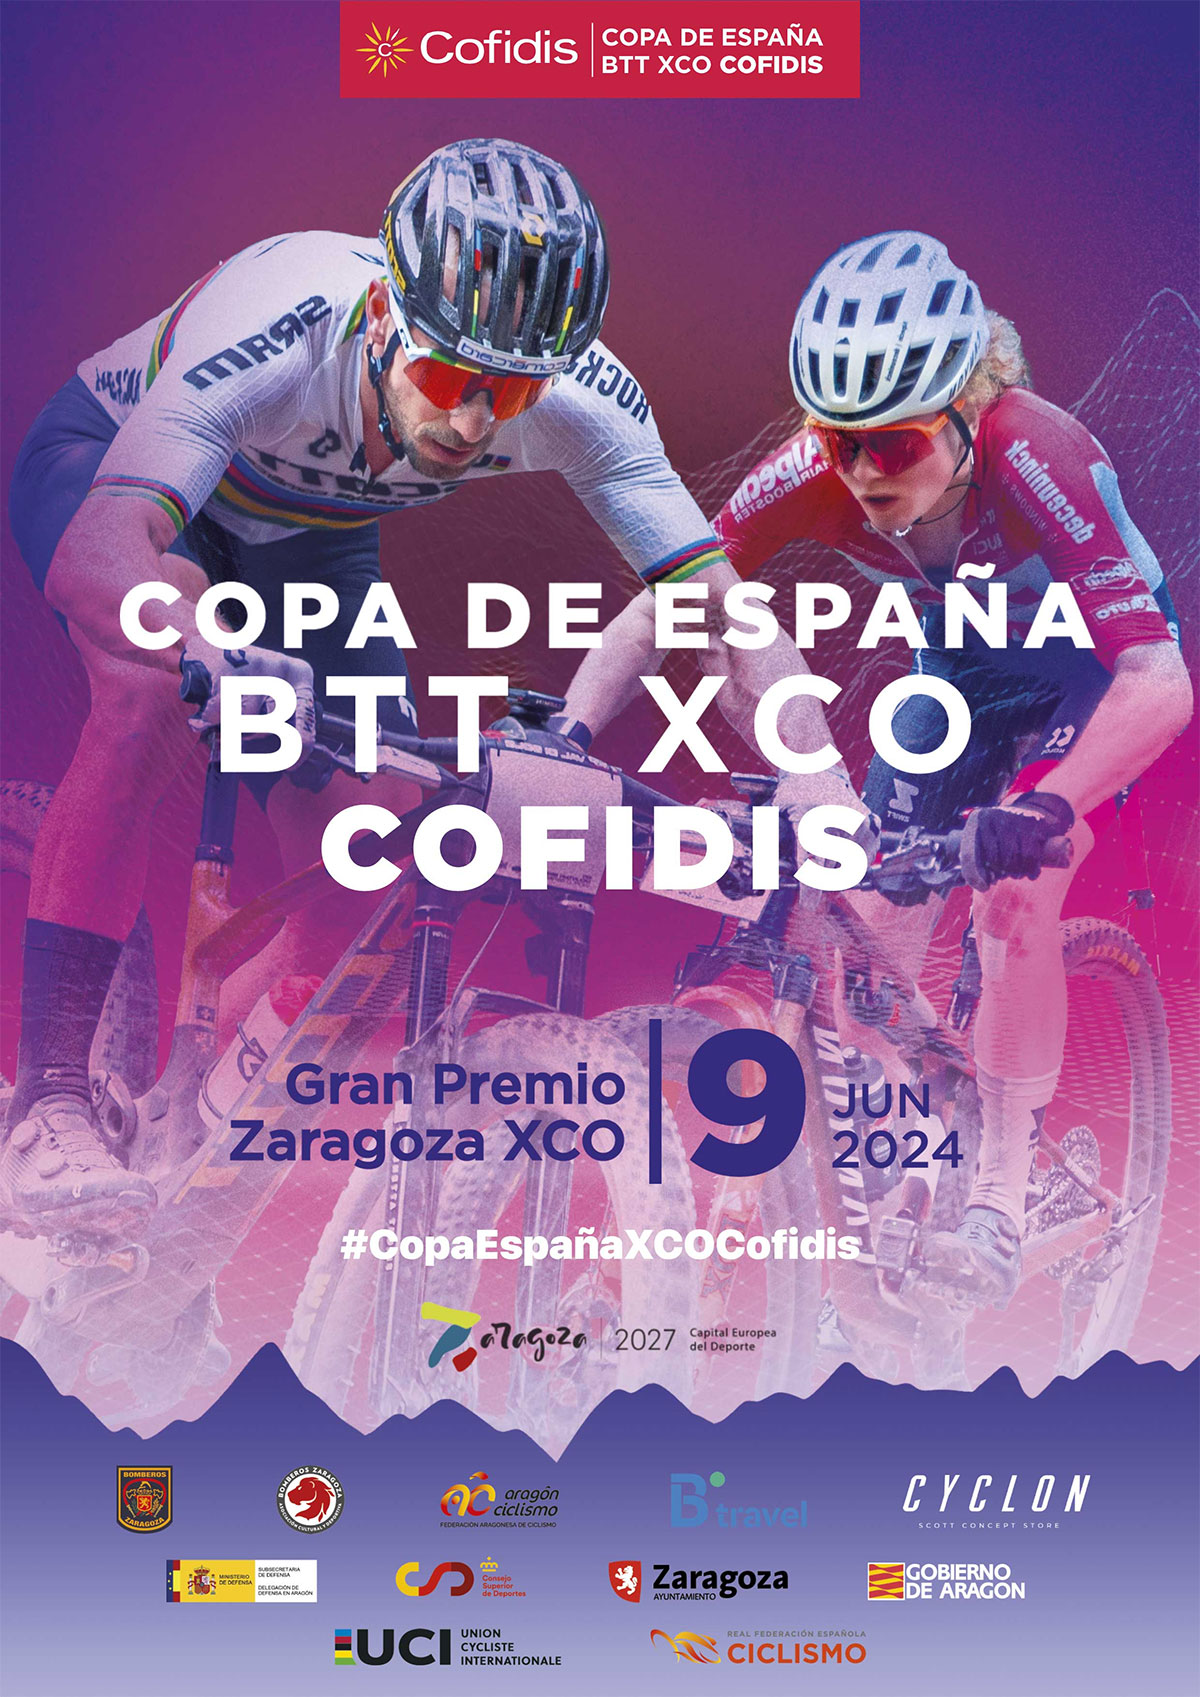 La penúltima prueba de la Copa de España de XCO llega a Zaragoza este fin de semana, con retransmisión en directo